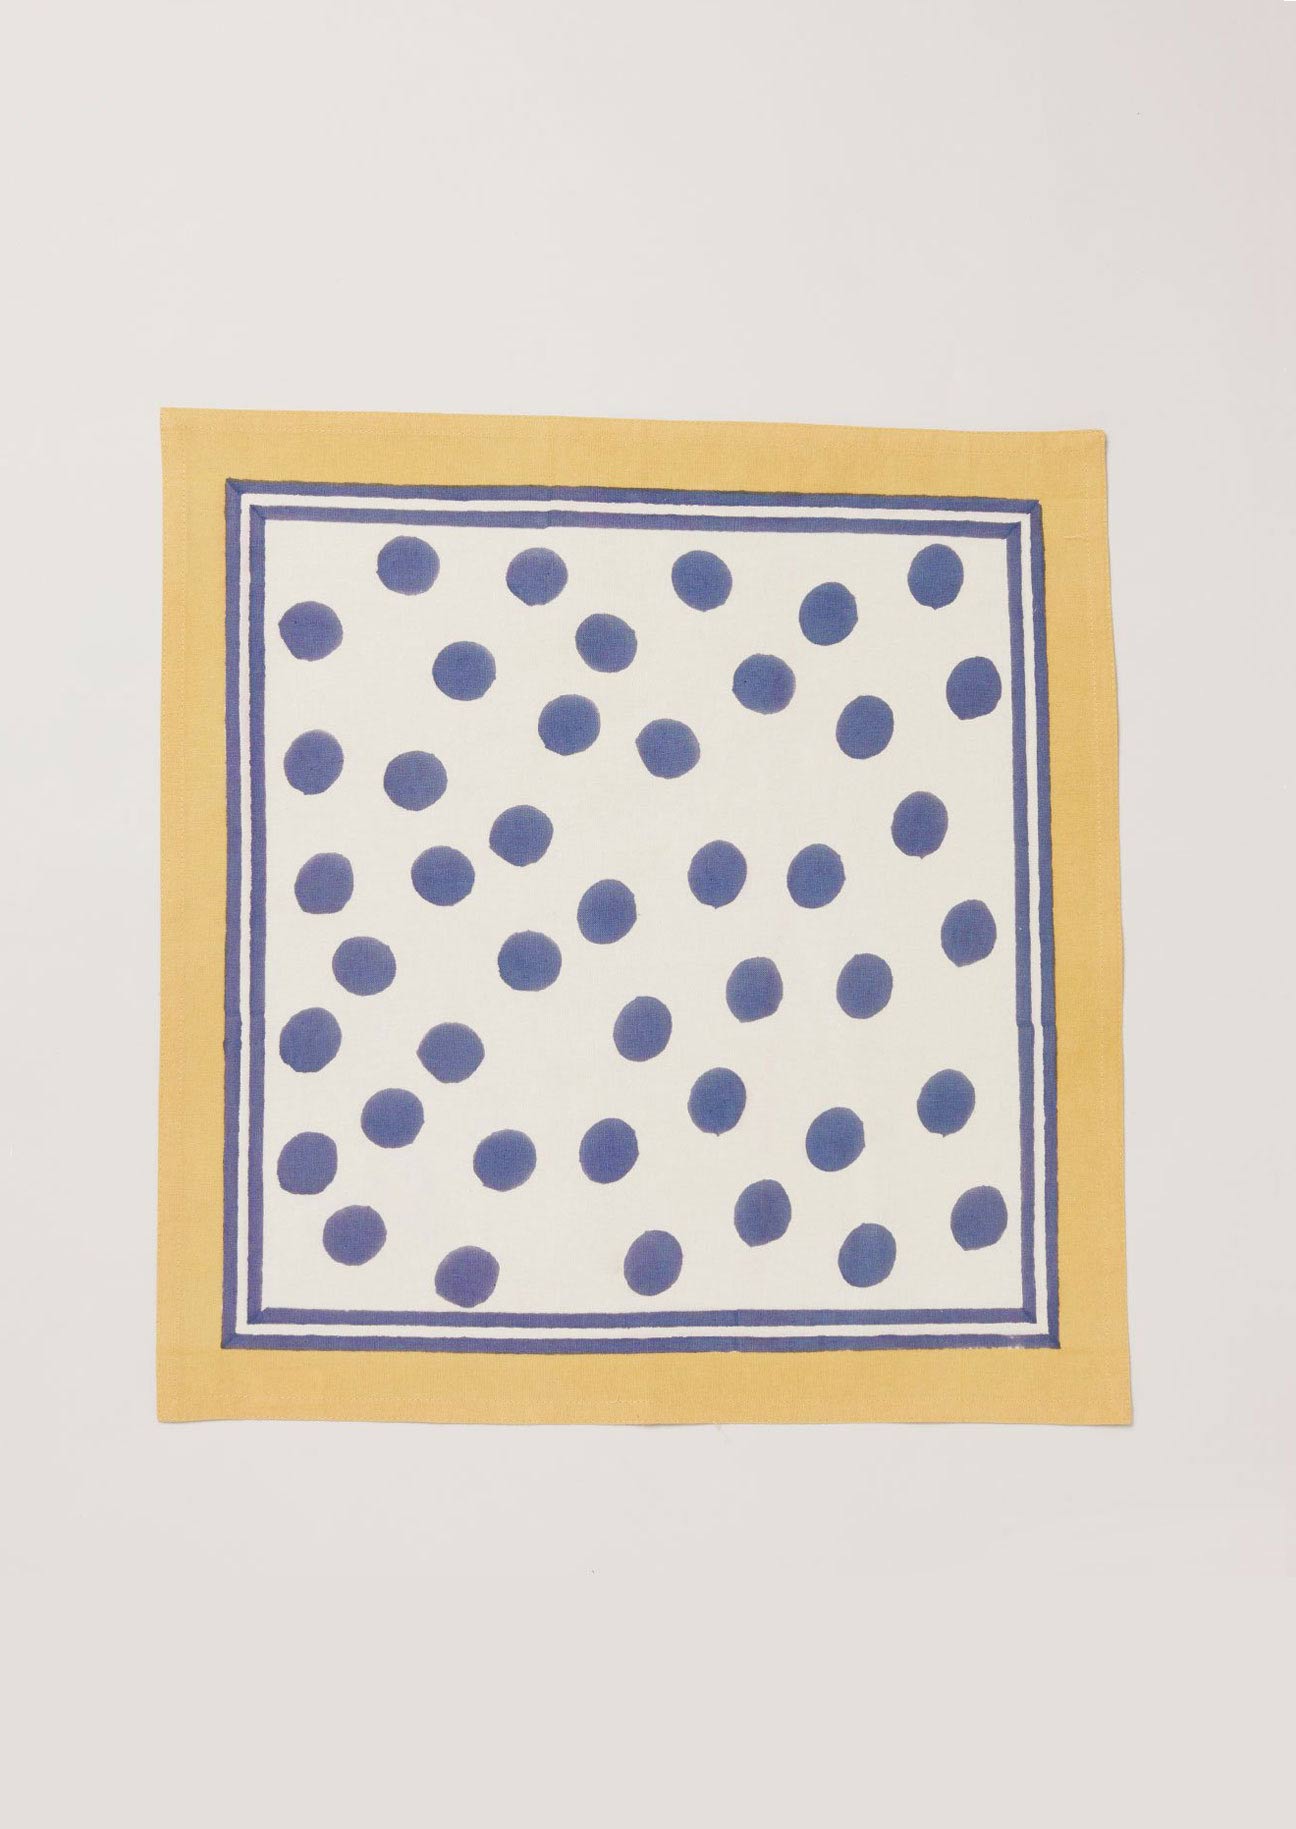 Single navy dot and yellow border napkin block printed onto white cotton.